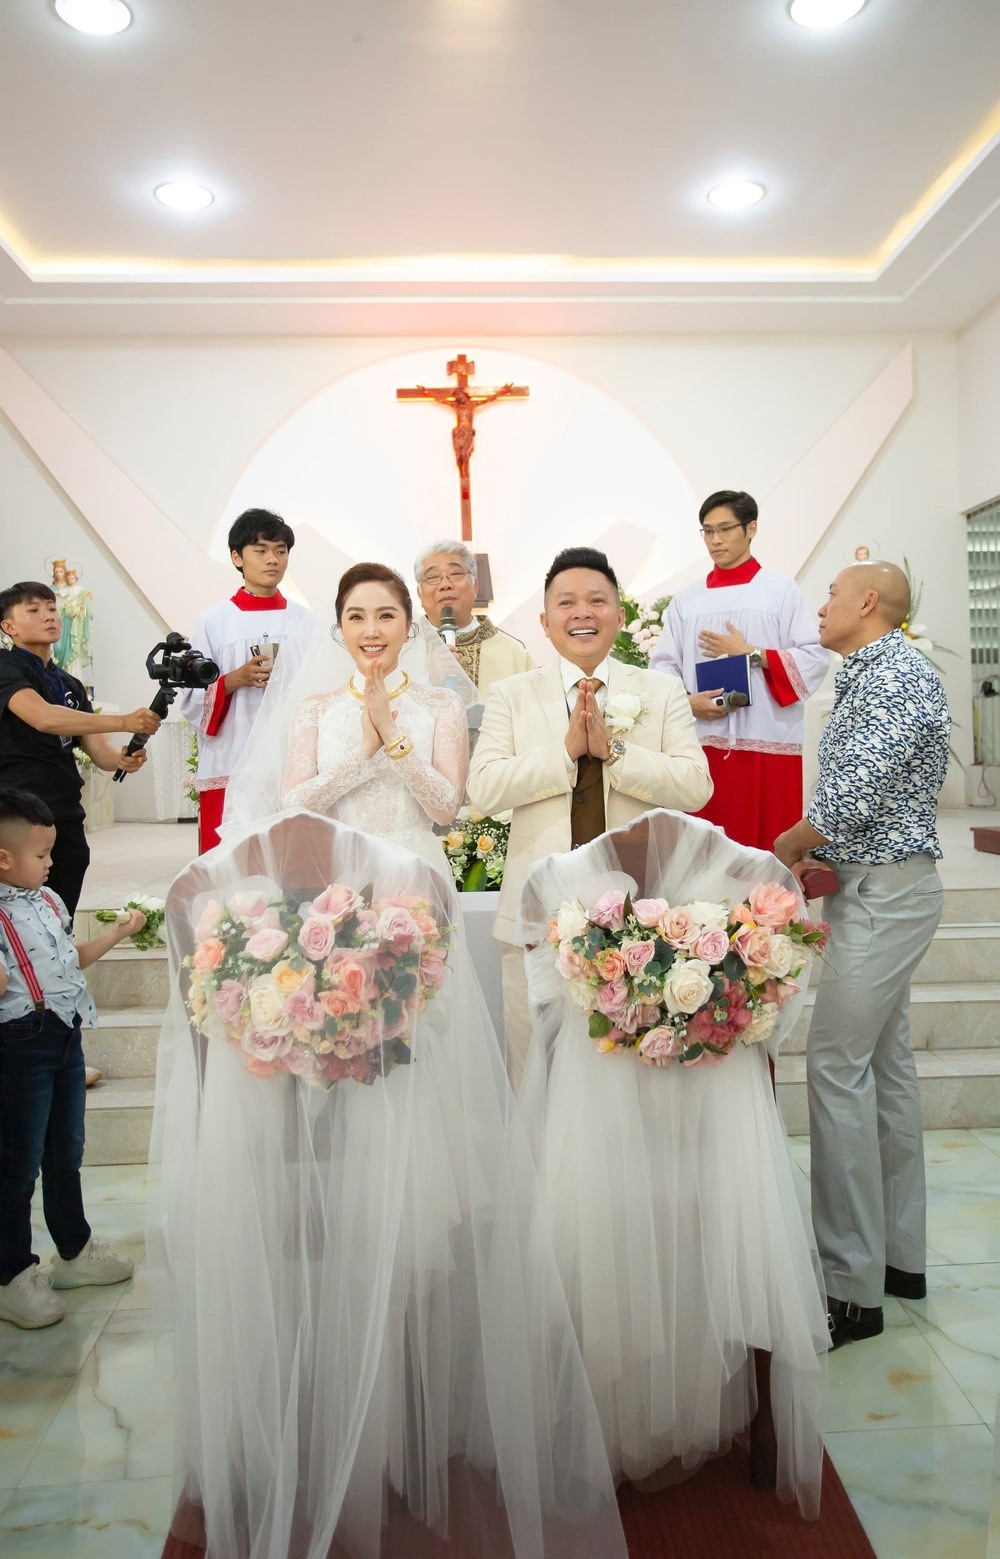 Sáng 15.11, Bảo Thy đã tổ chức đám cưới tại nhà thờ cùng ông xã doanh nhân Phan Lĩnh. Mặc dù hạn chế truyền thông tác nghiệp nhưng sau đó, phía Bảo Thy đã tung trọn vẹn bộ ảnh những khoảnh khắc trong đám cưới của nữ ca sĩ. Ảnh: BT.